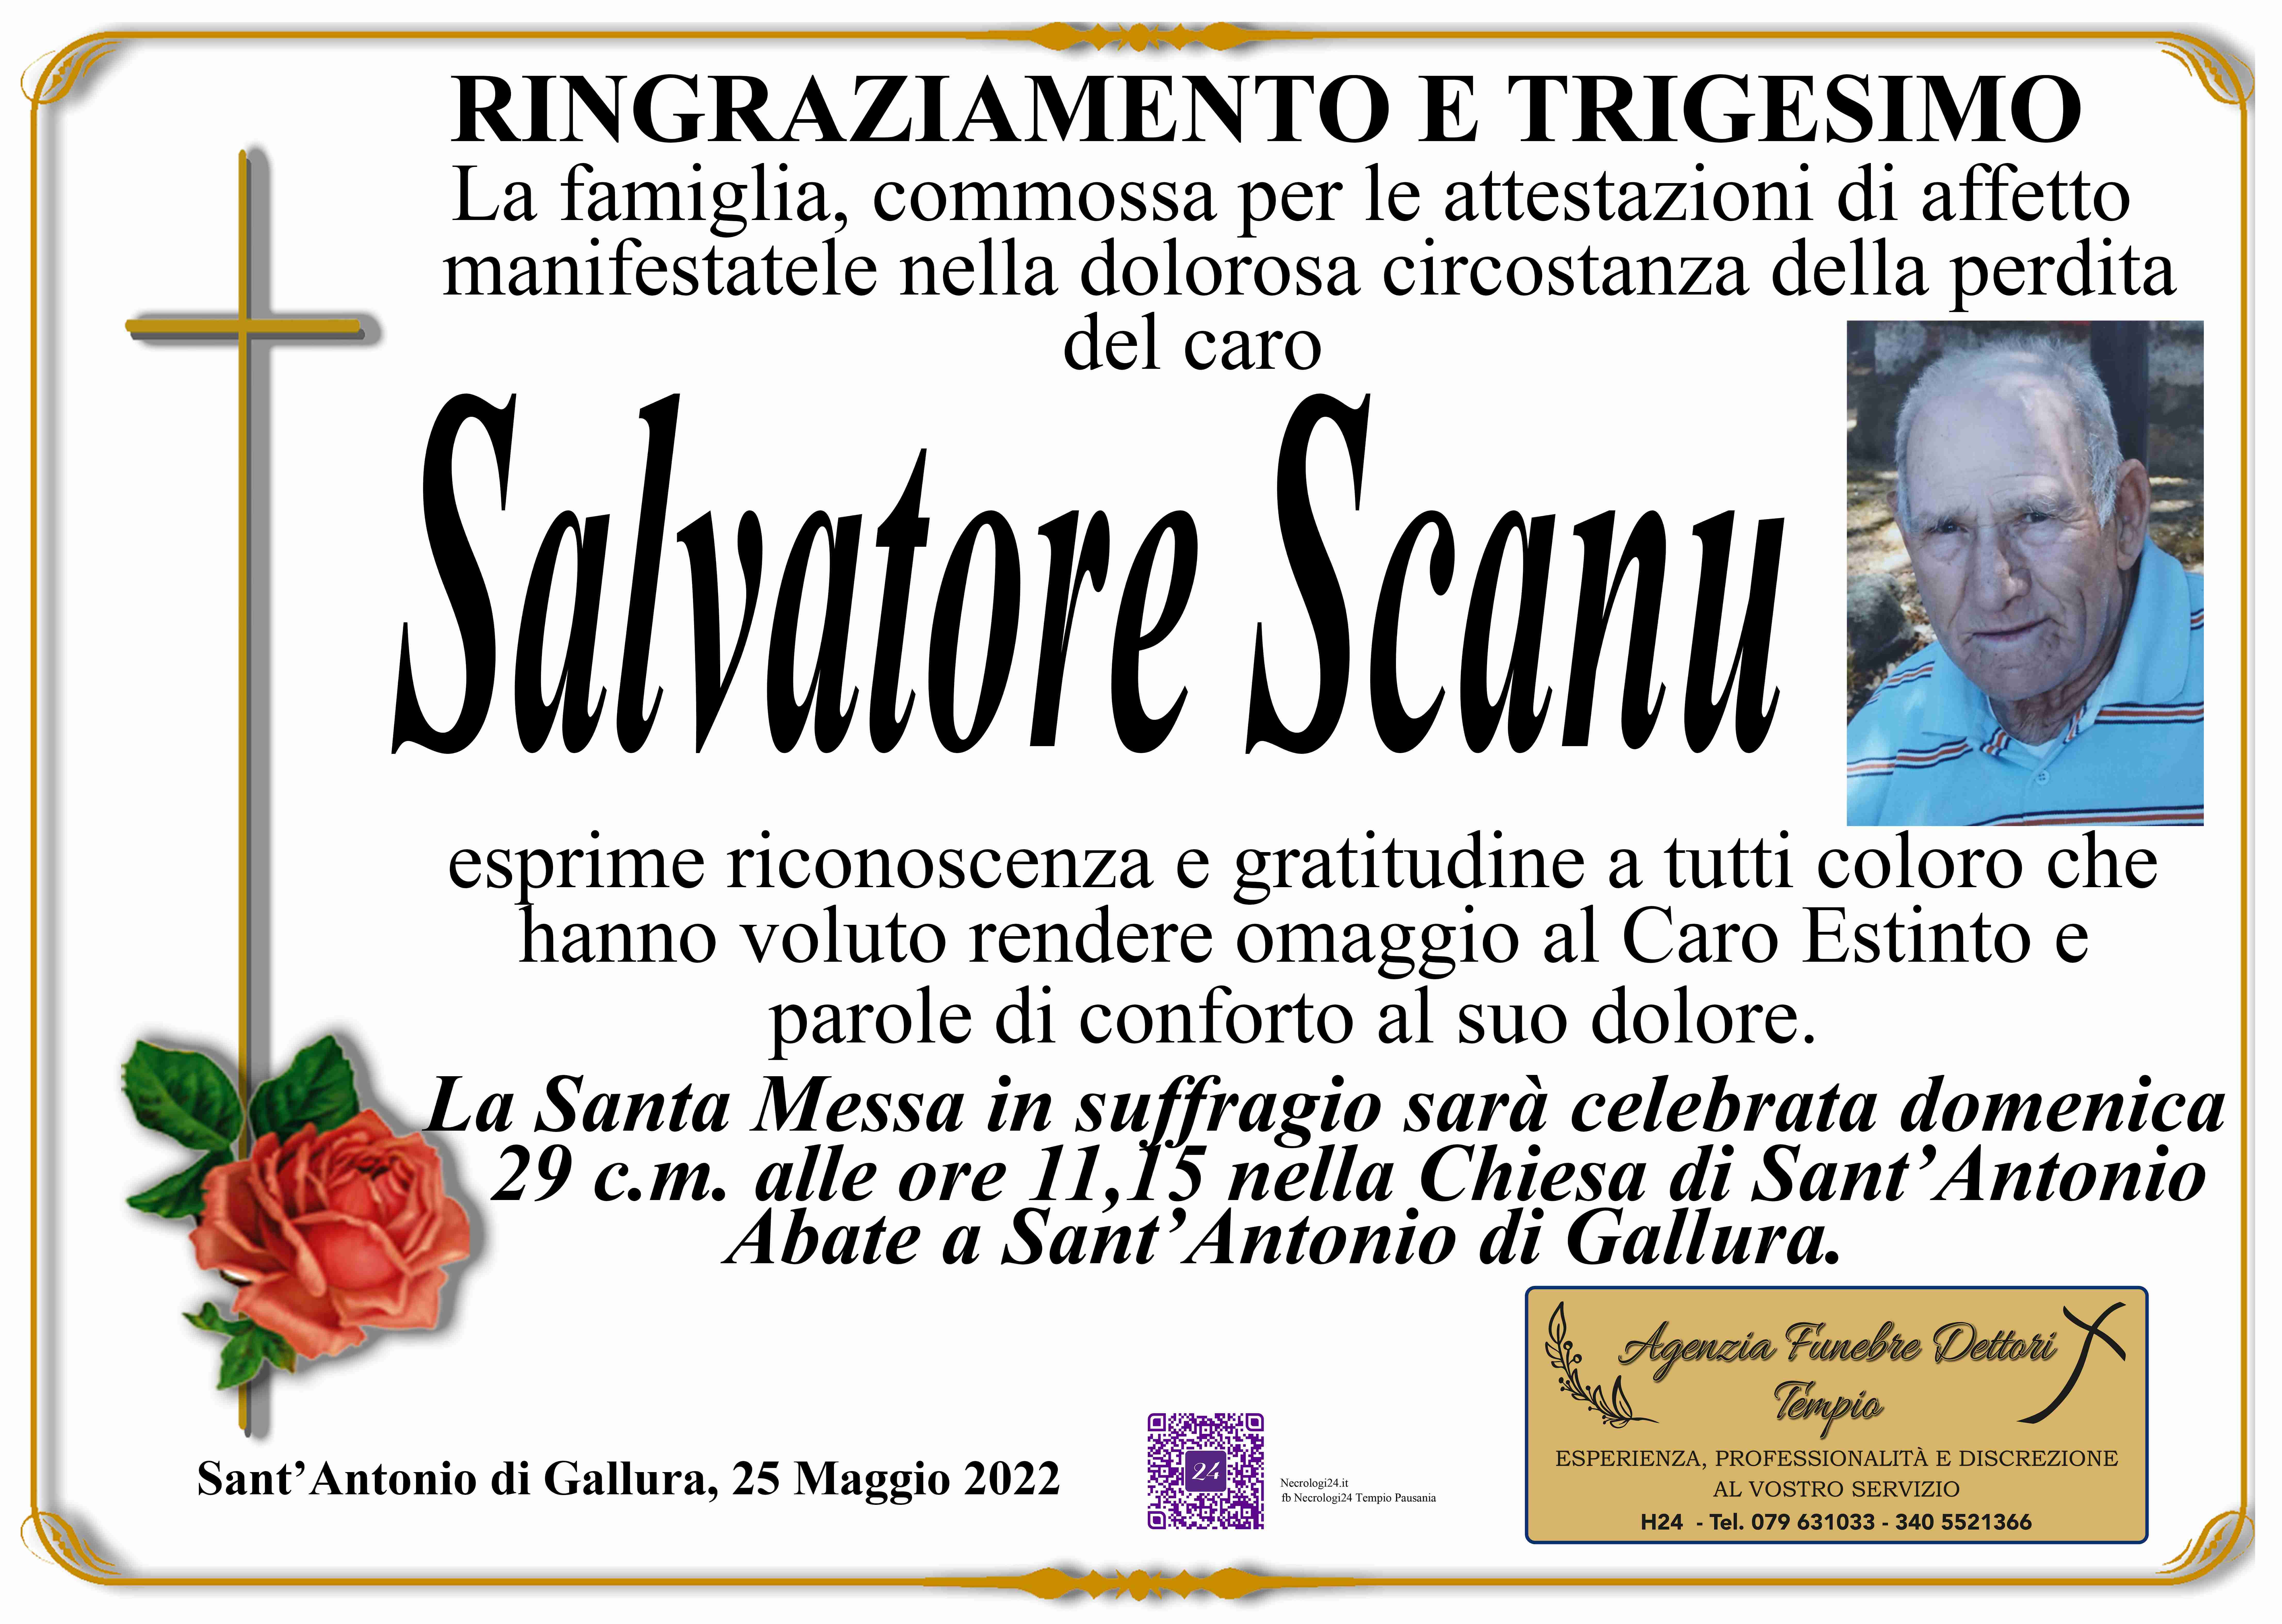 Salvatore Scanu